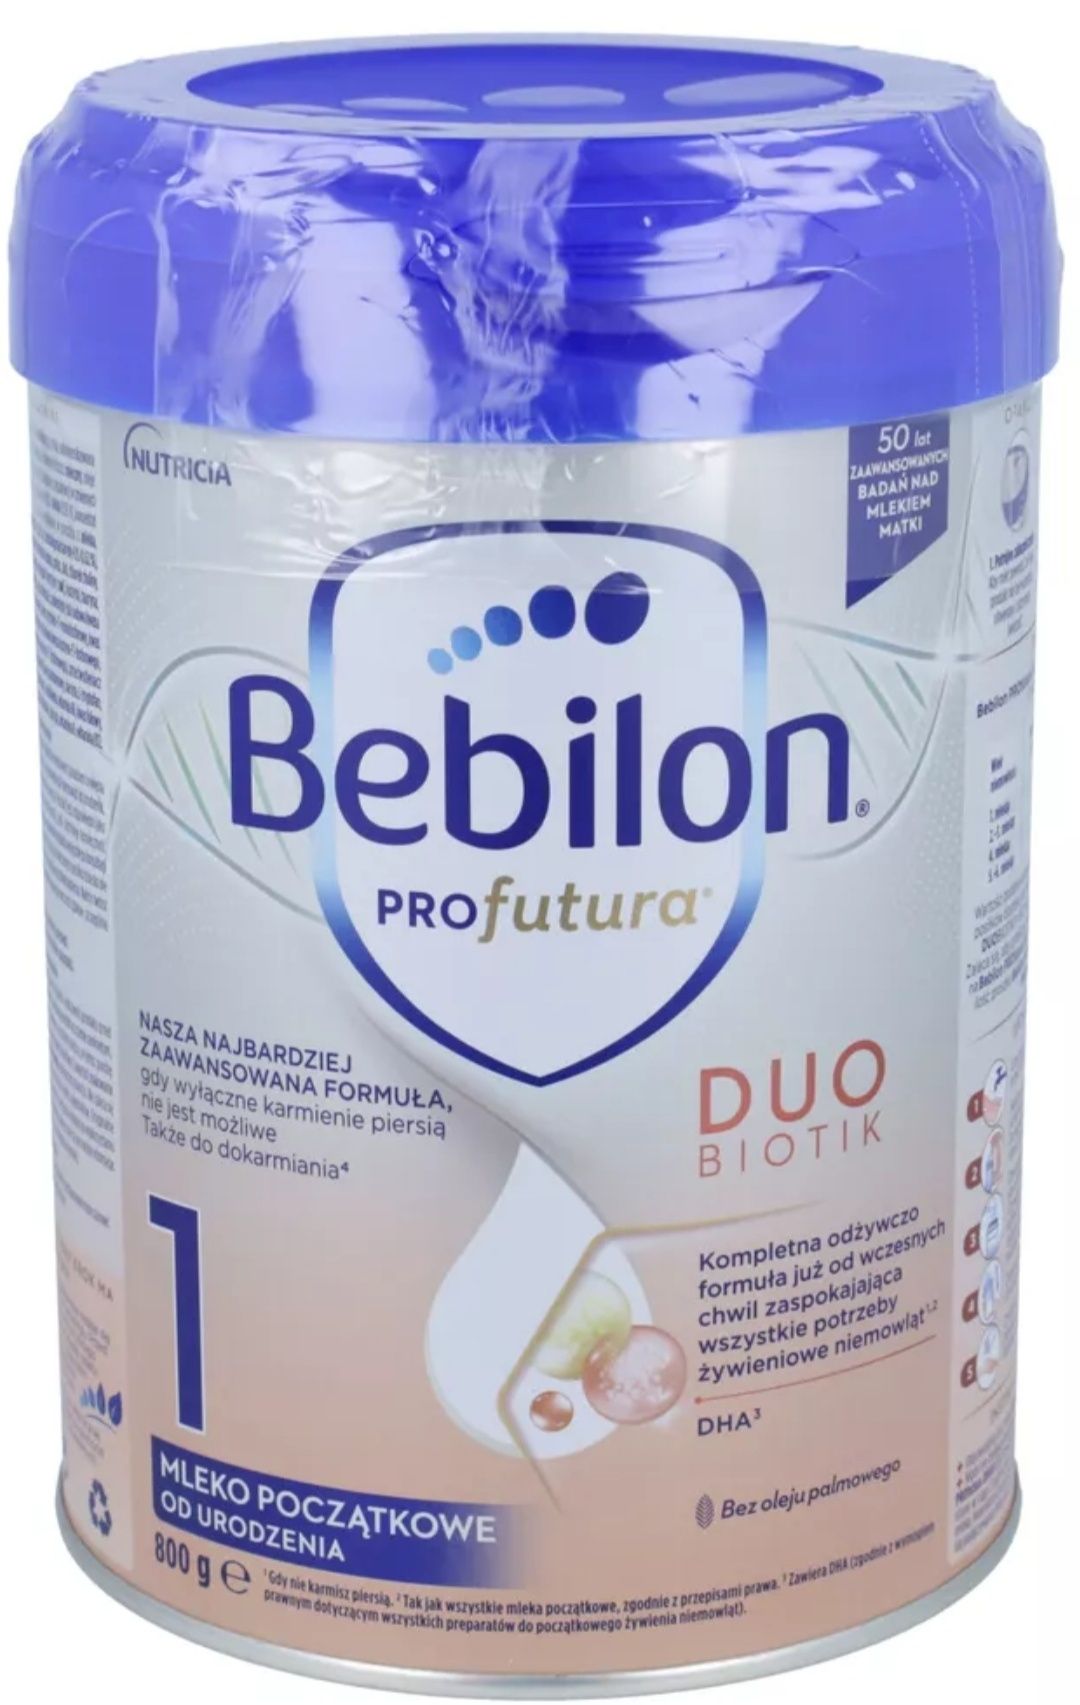 Mleko Bebilon pro futura Duo biotik 1 ,puszka 800 g ,nowe ,9.2025